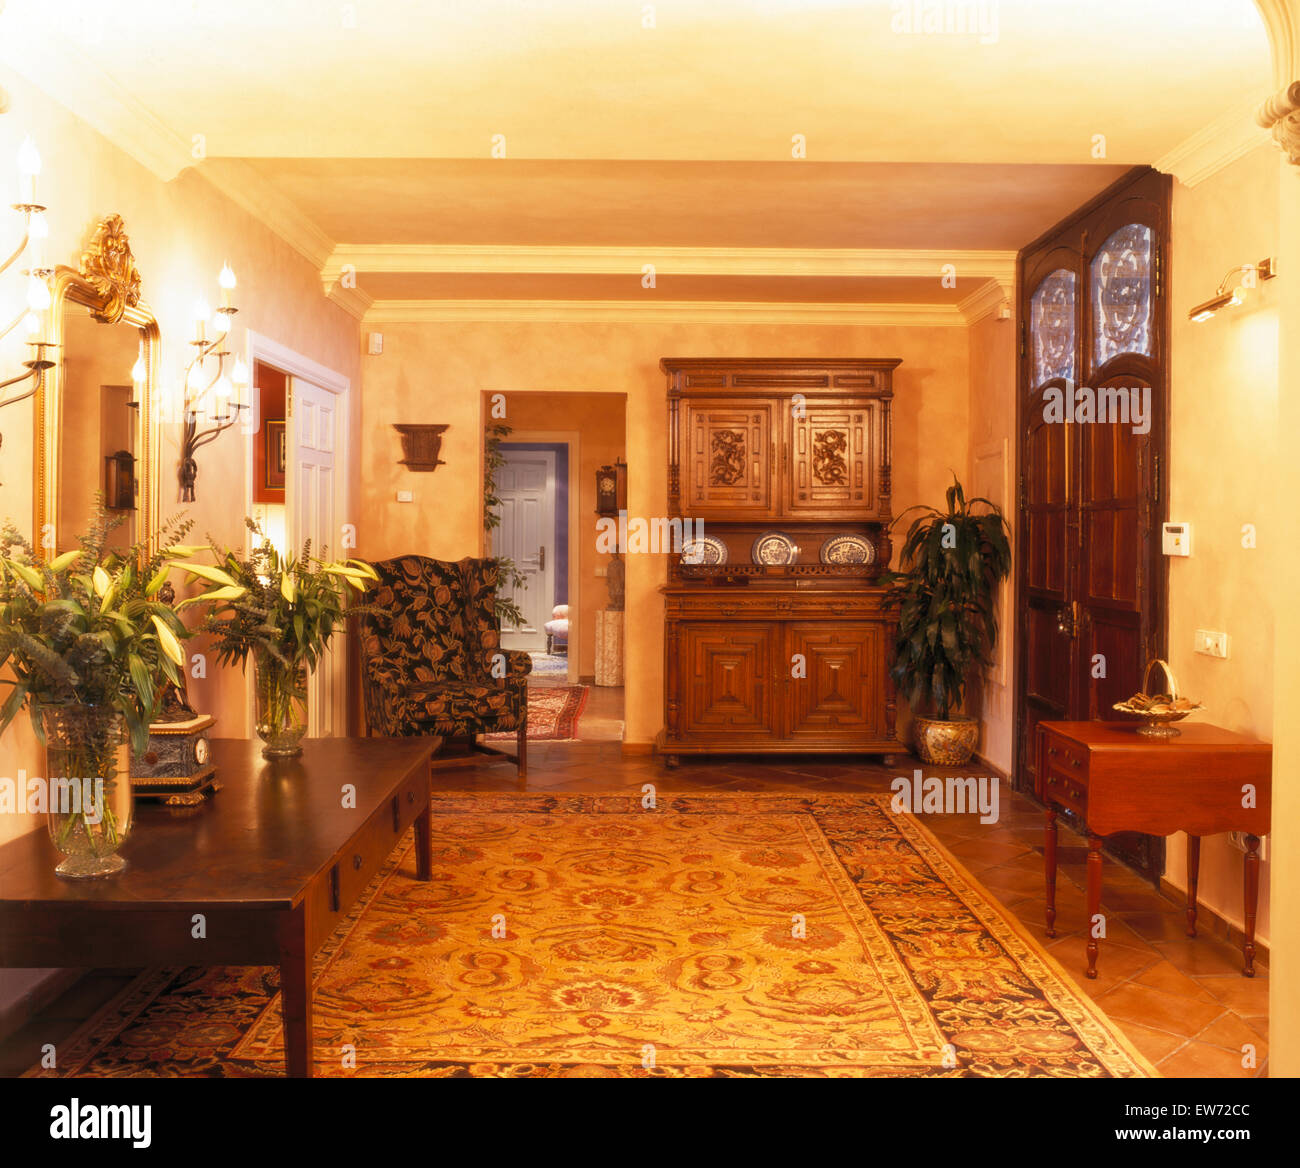 Groß gemusterten Teppich und geschnitzte hölzerne Kommode in Halle mit Vasen mit weißen Lilien auf Konsolentisch in spanischen villa Stockfoto